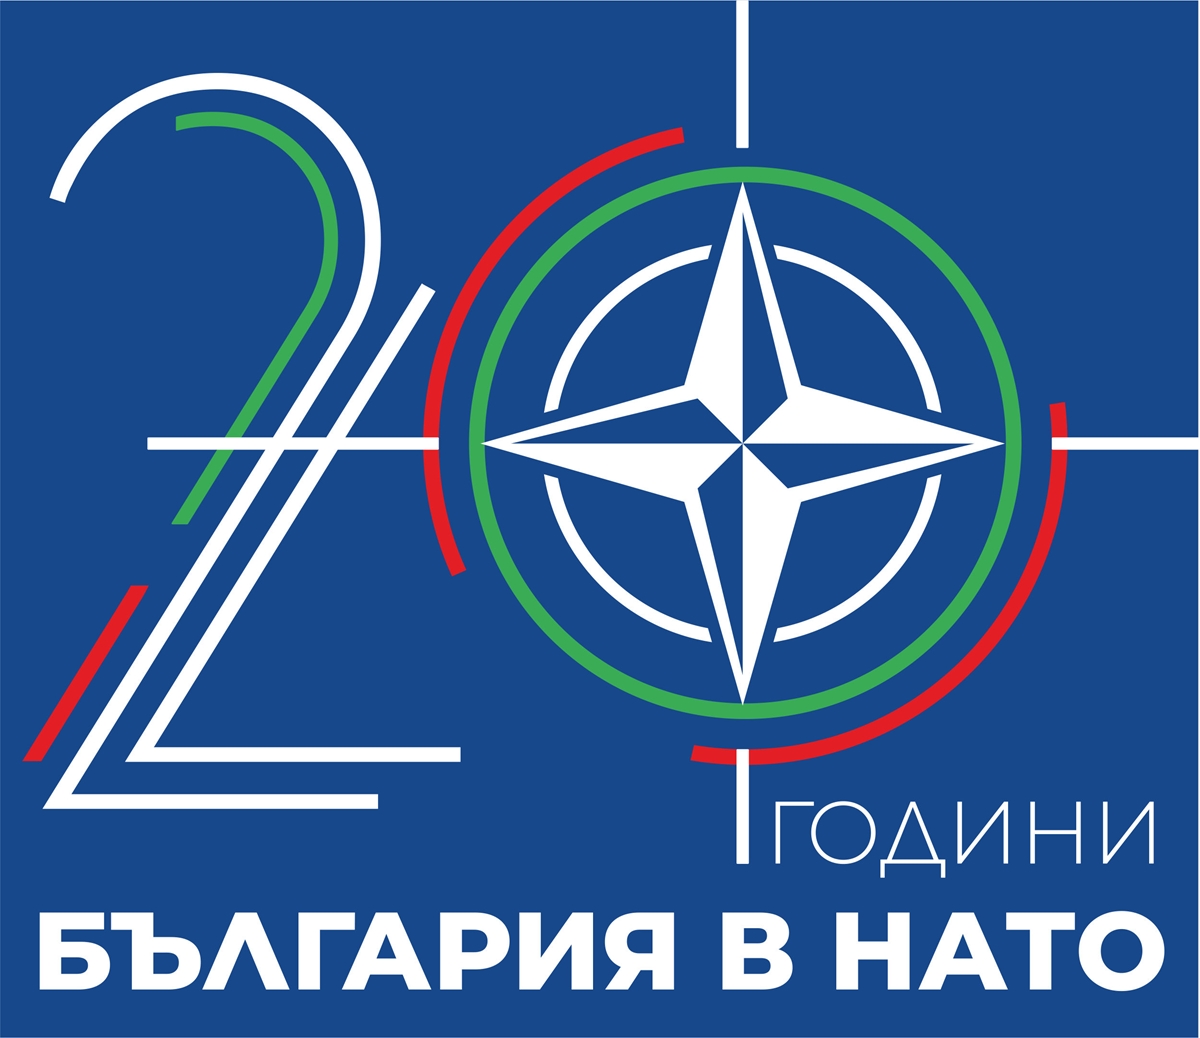 Тържествен концерт „20 години България в НАТО" за жителите и гостите на София